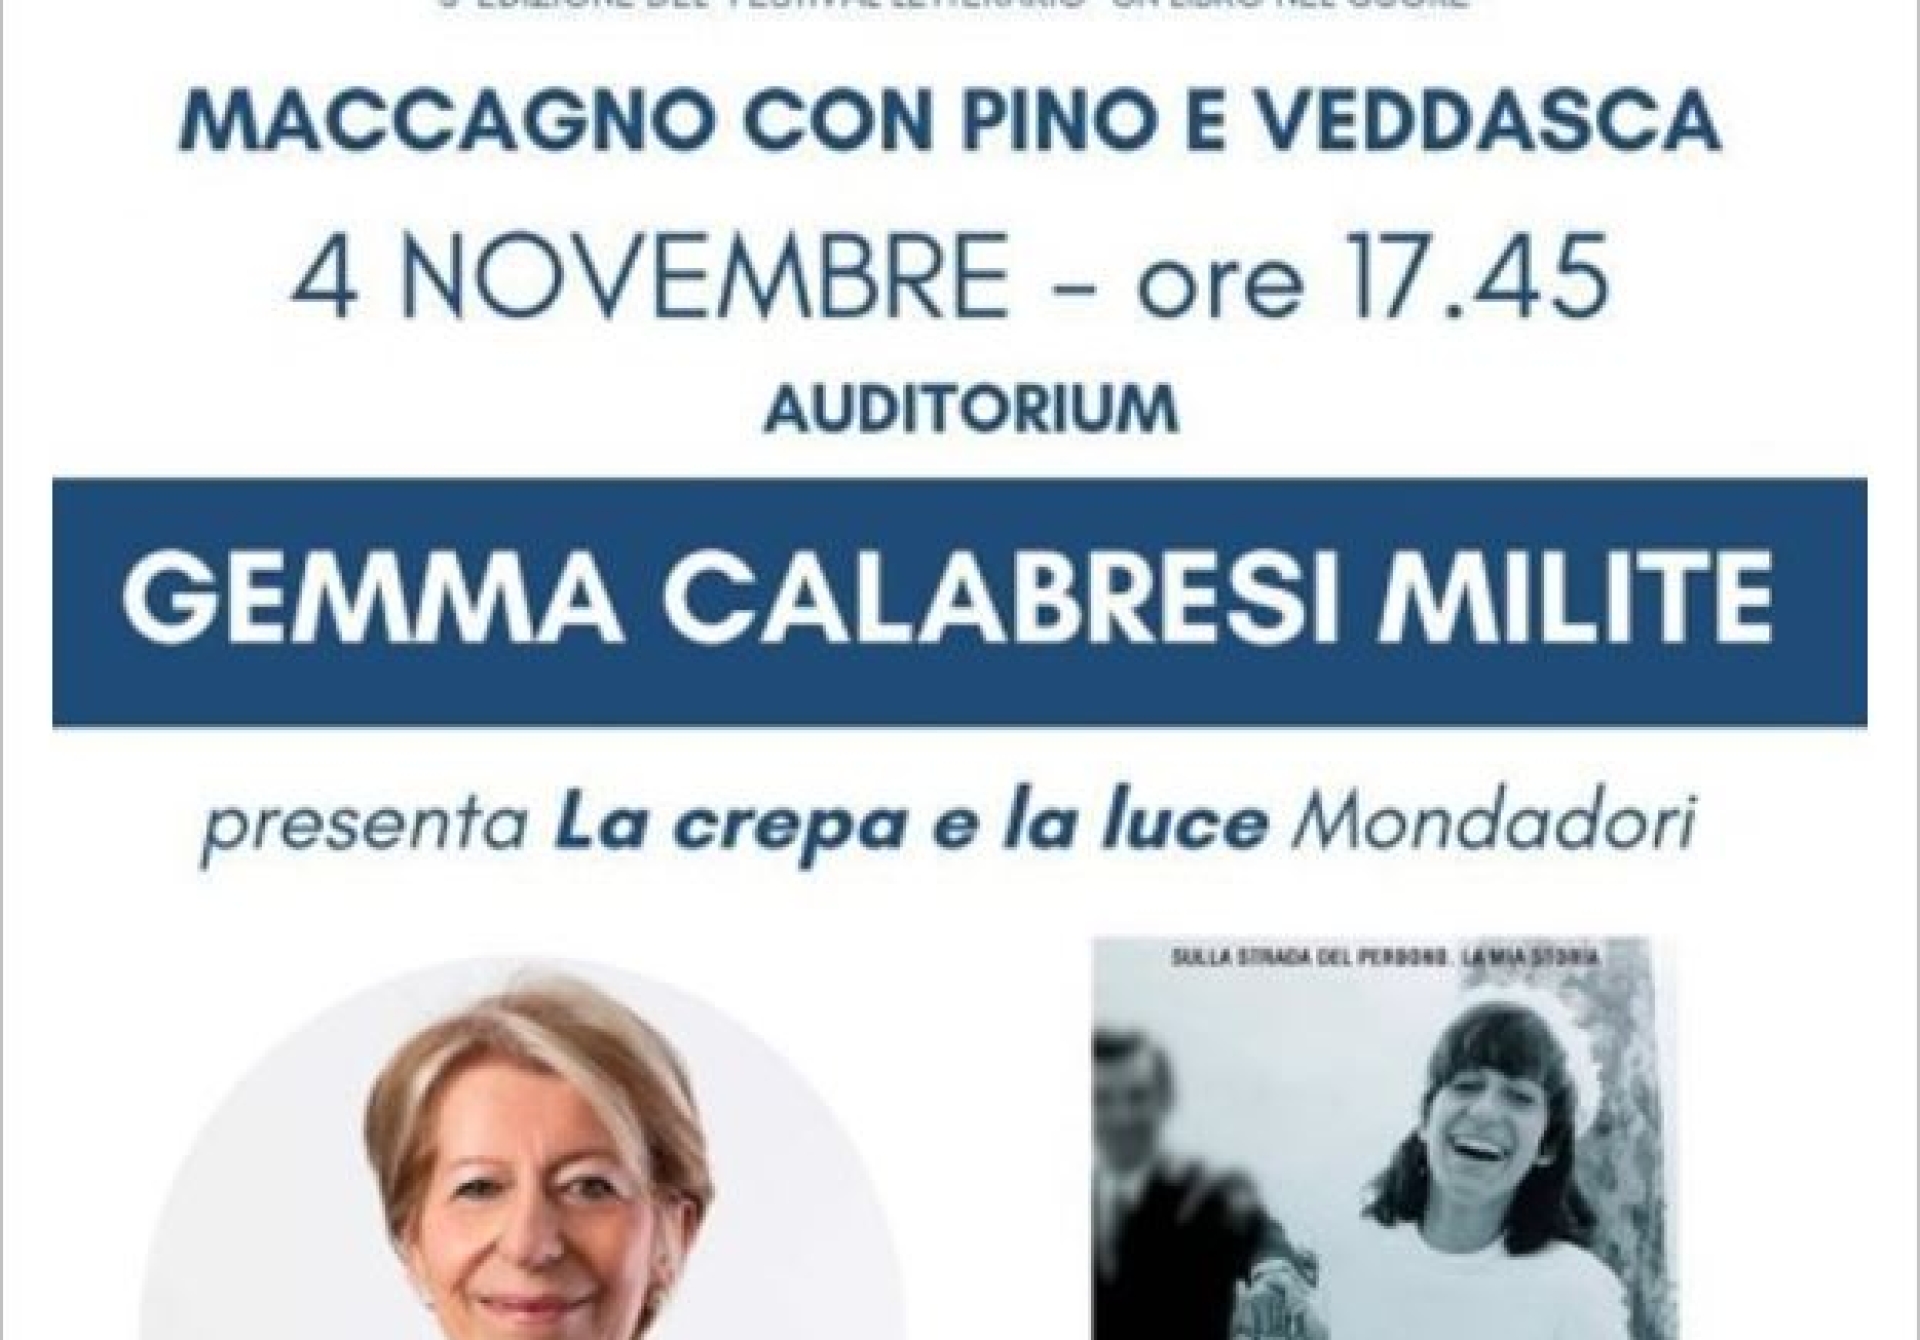 Gemma Calabresi Milite presenta il libro: “La crepa e la luce”